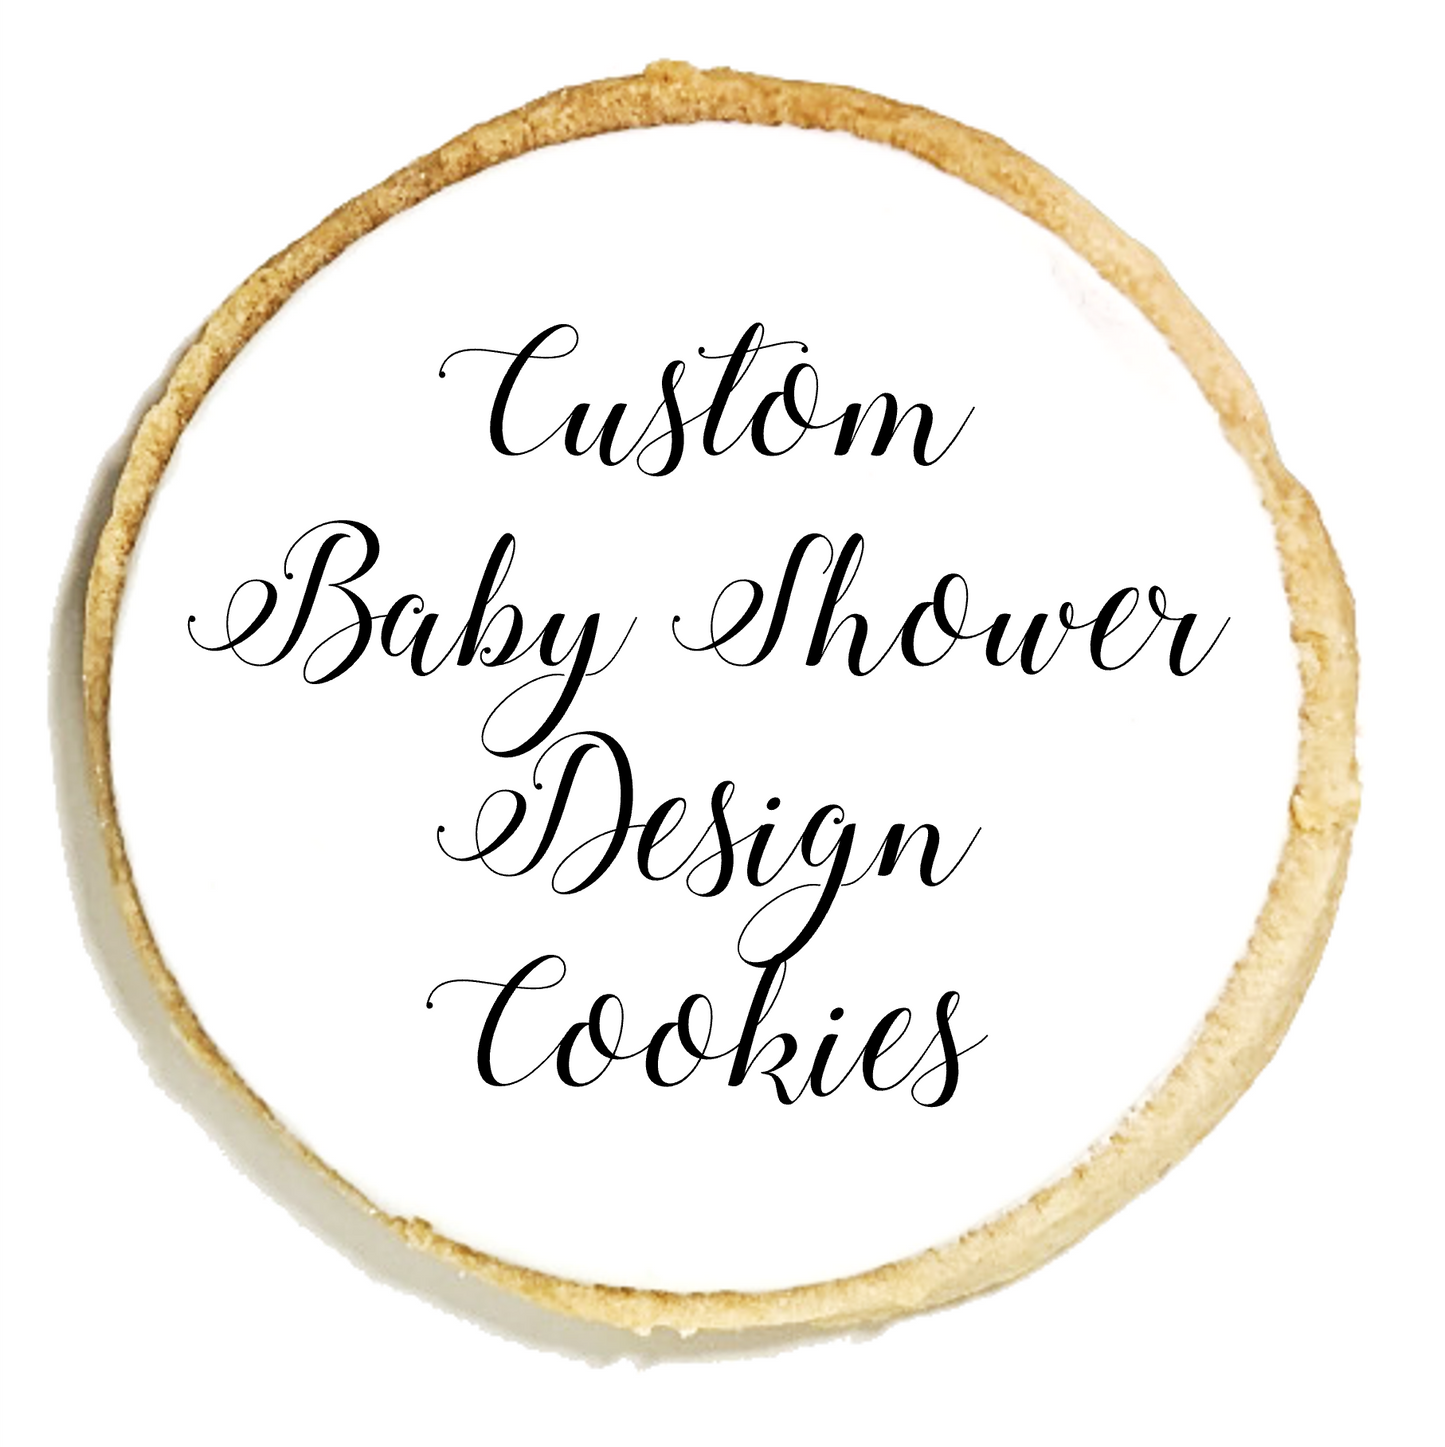 Custom Baby Shower Design Cookies